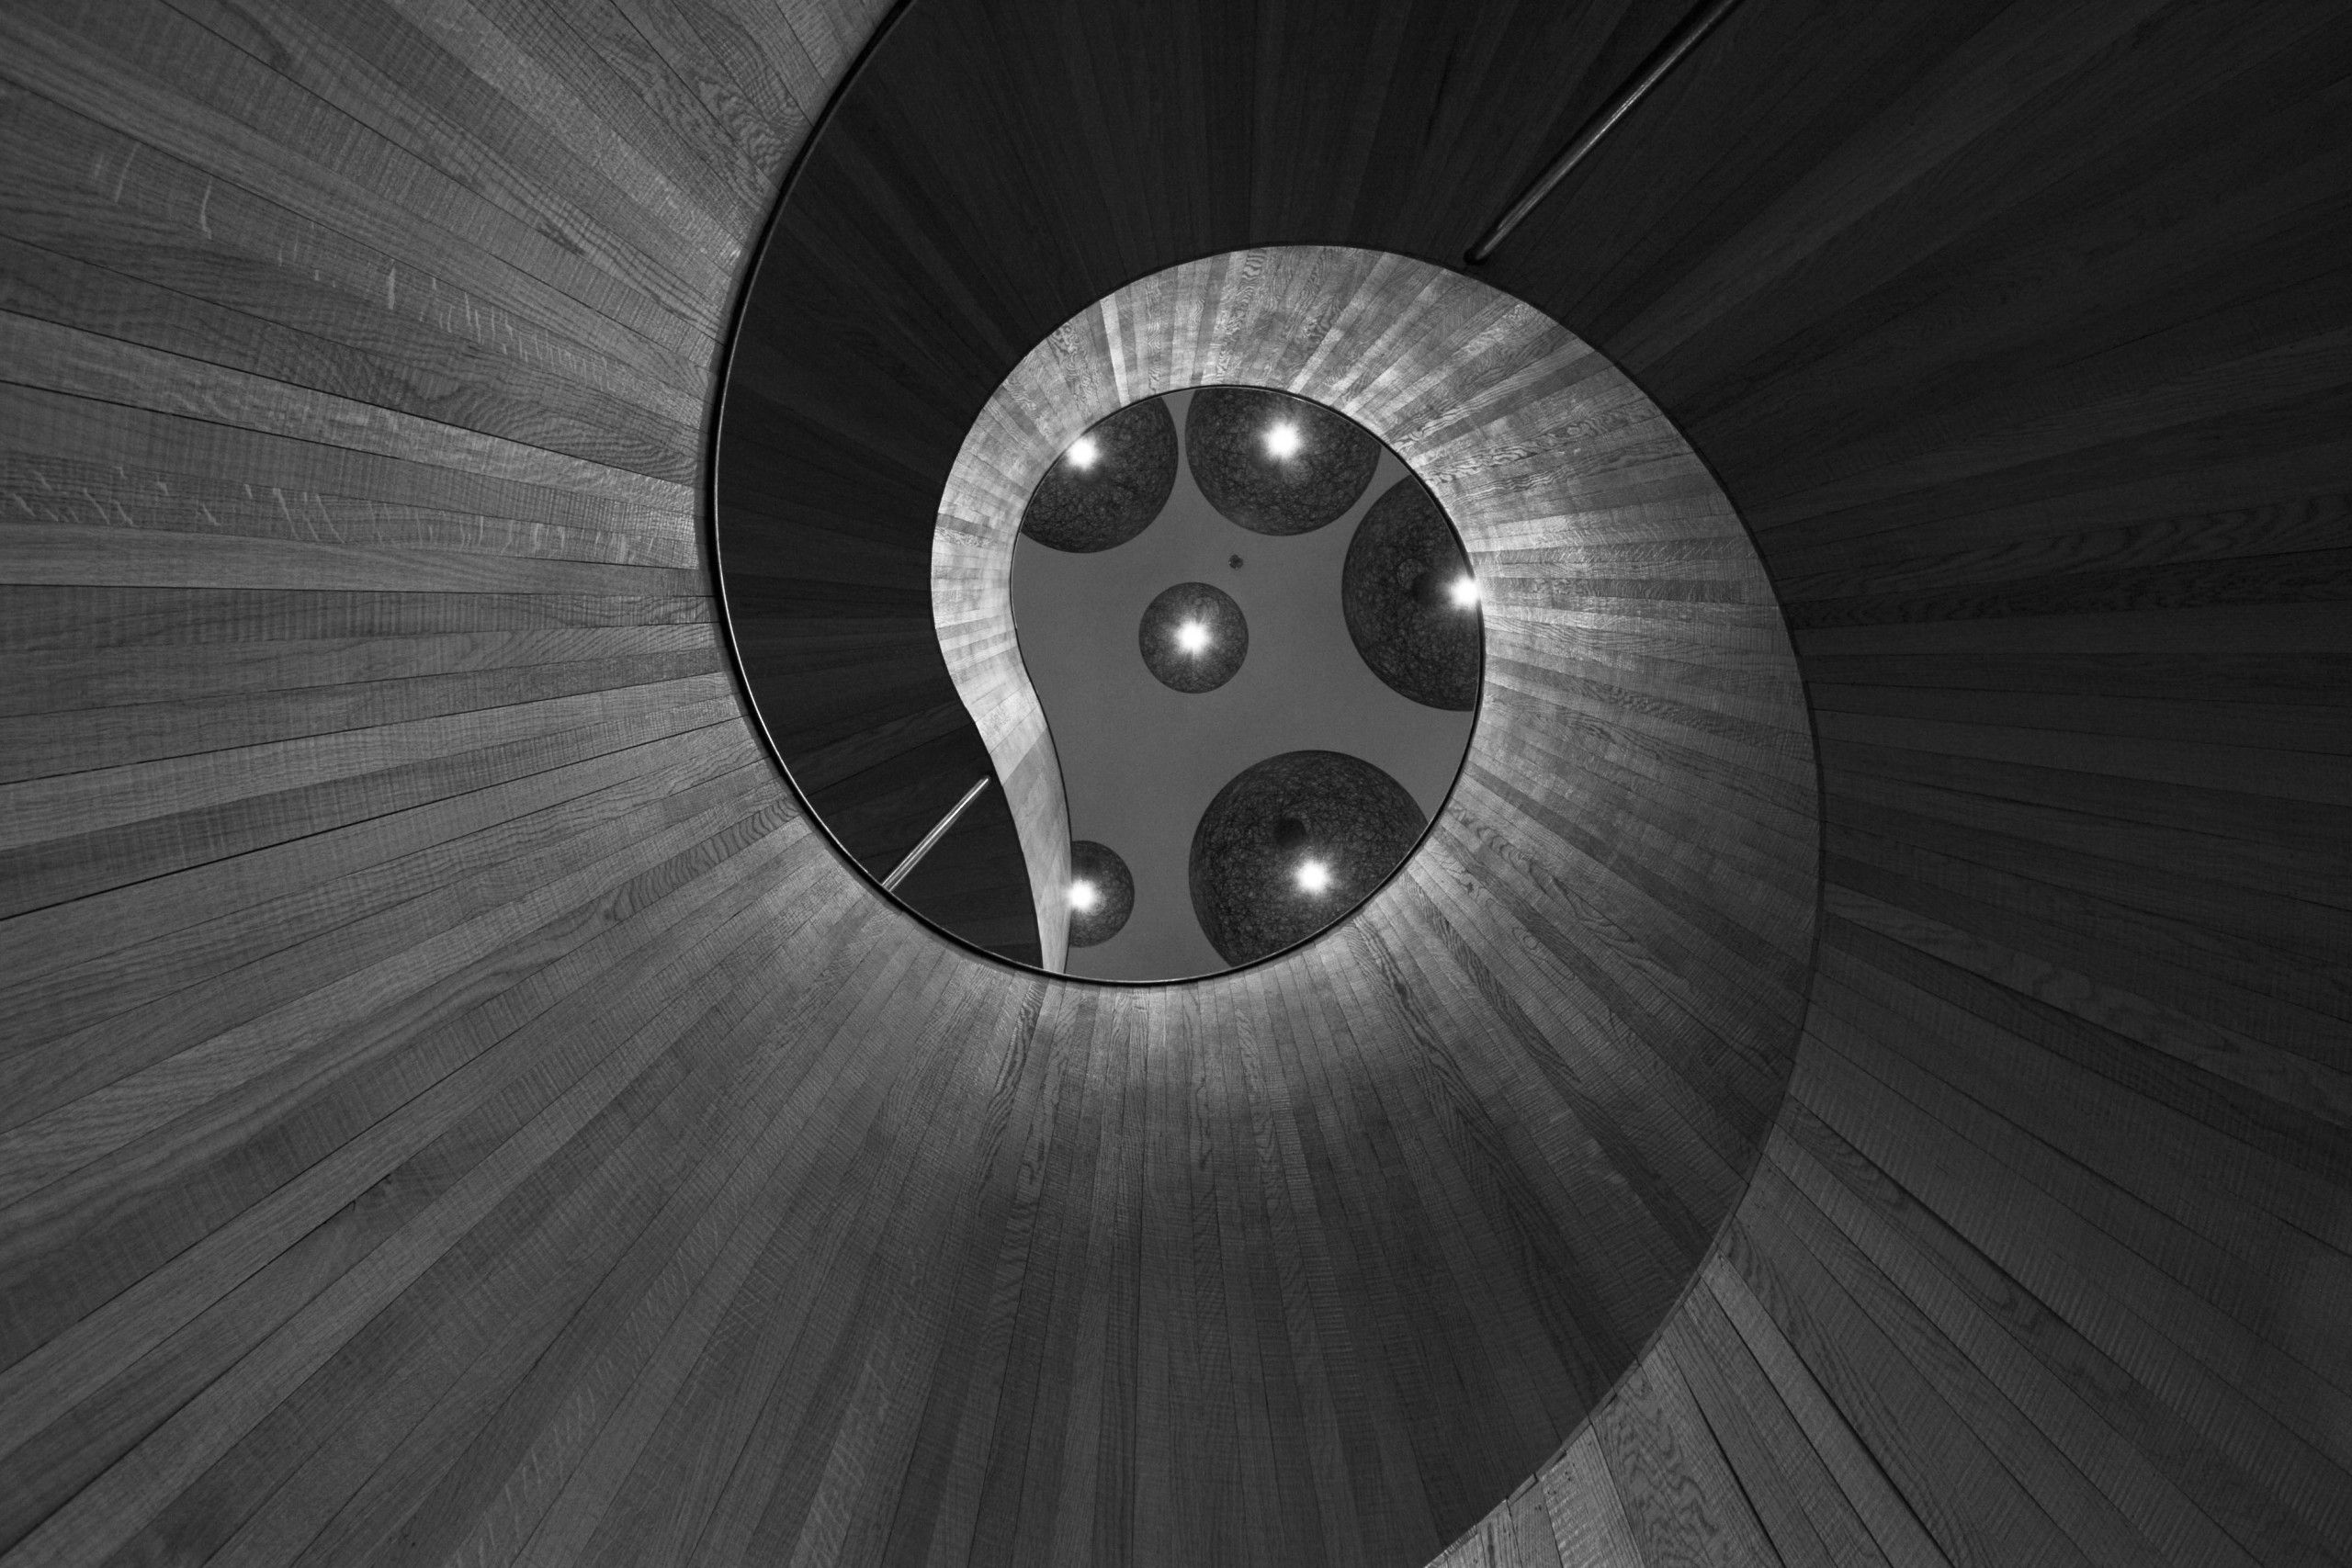 Spiral Stair Case by Matthew Walker